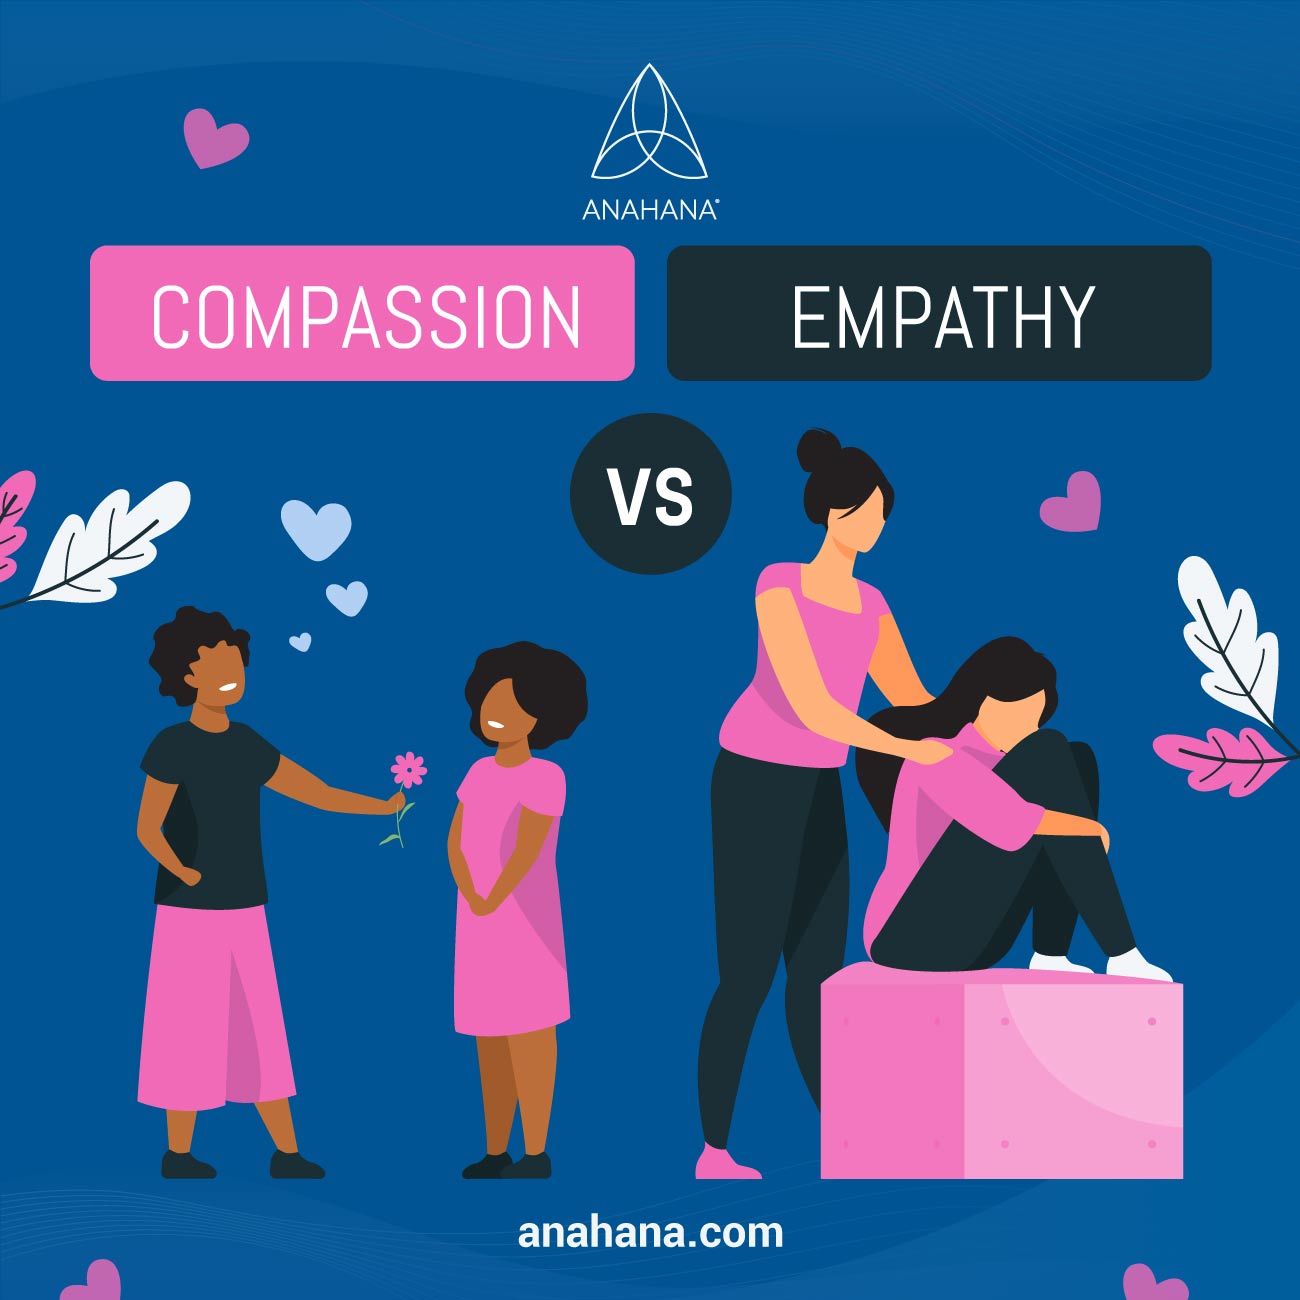 együttérzés vs empátia